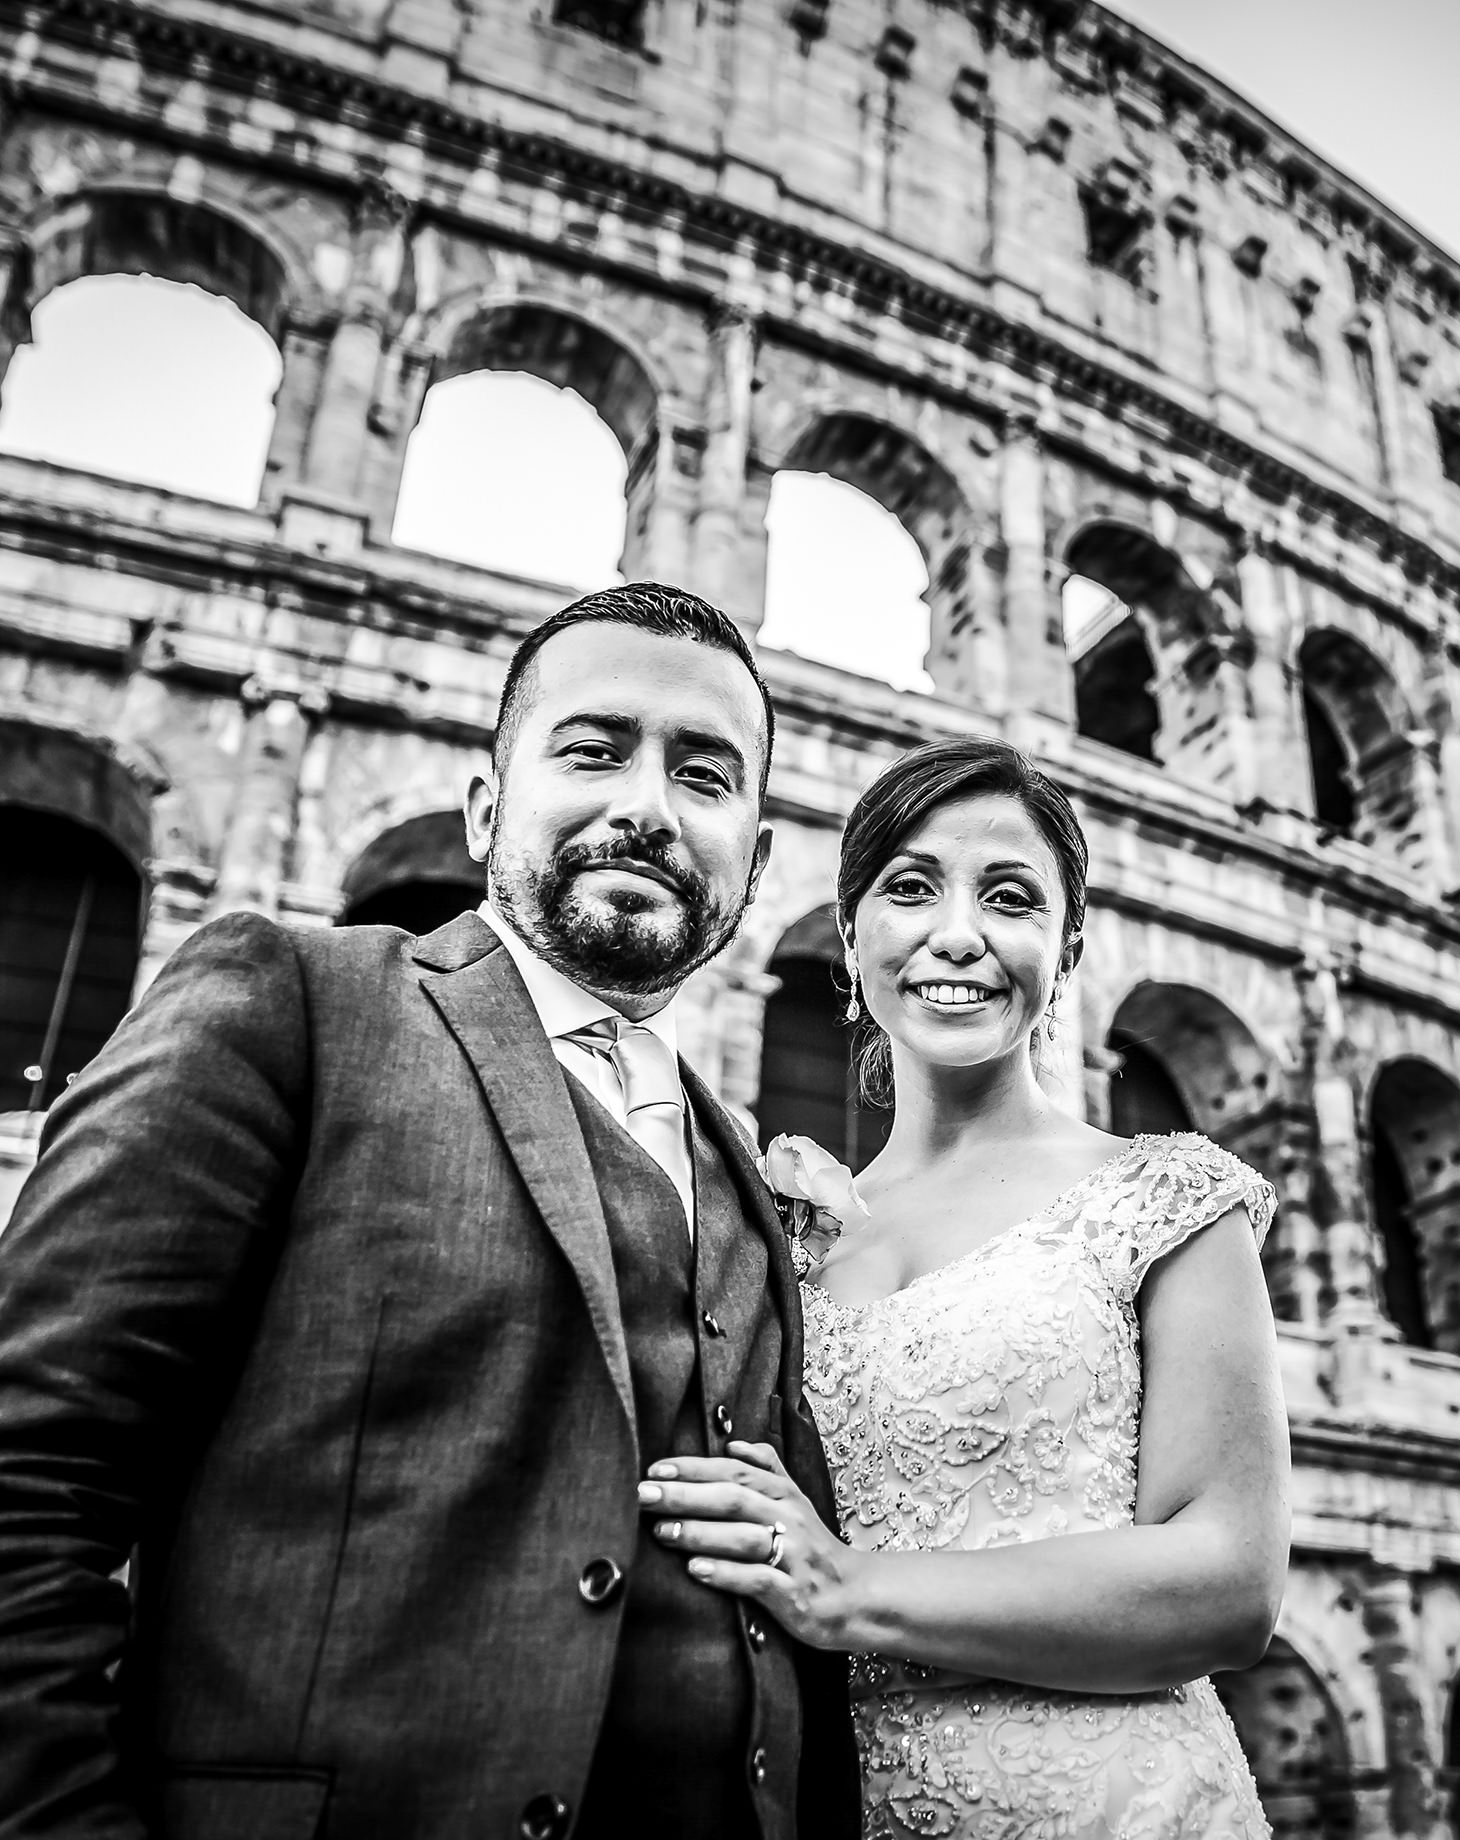 Adriana & Hector | Rome